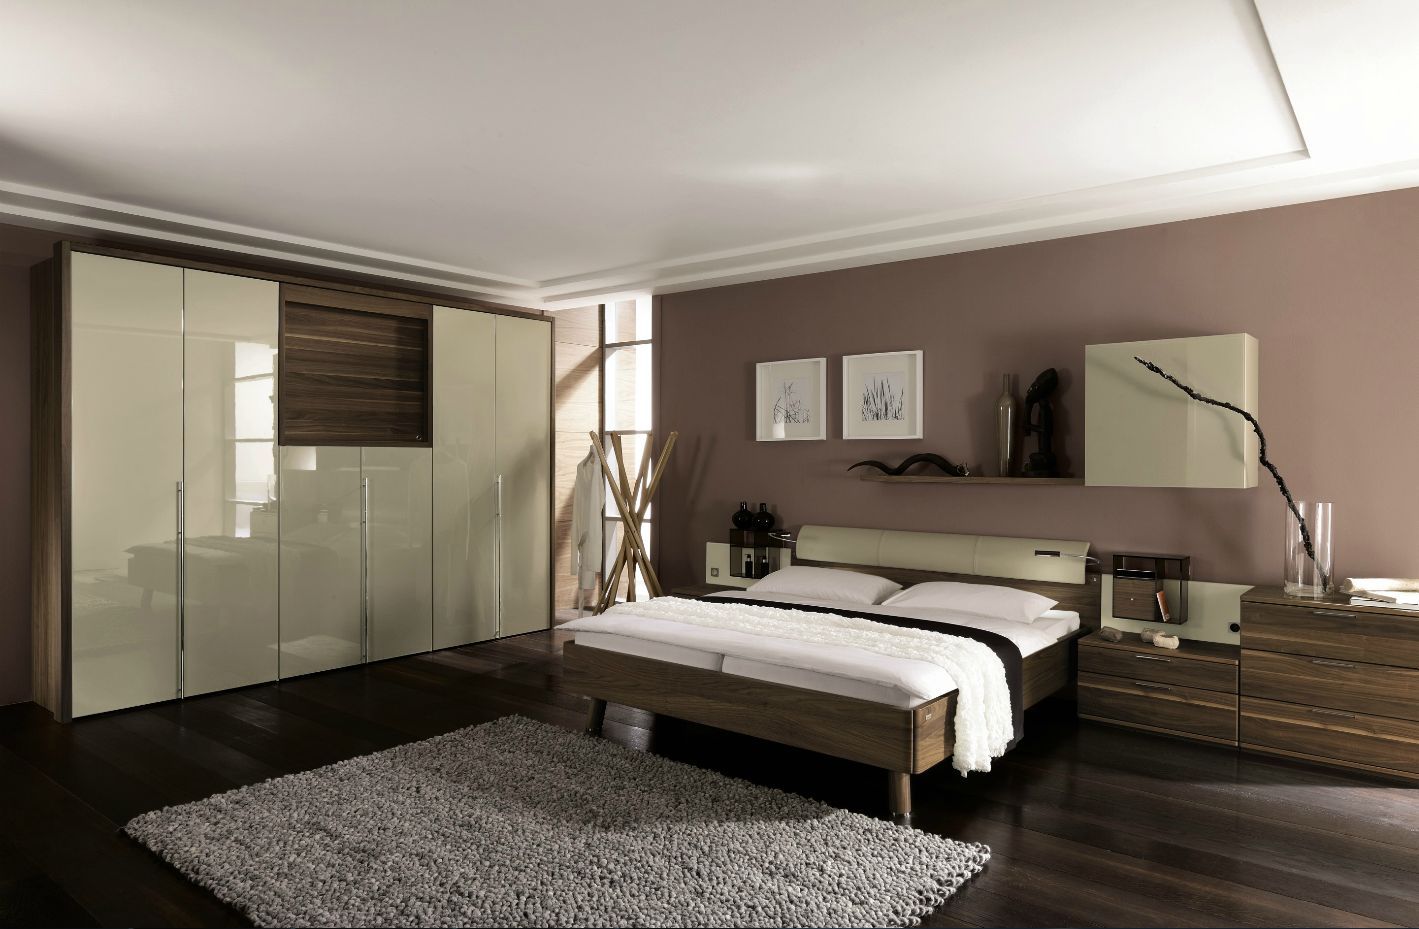 Cách thiết kế phòng ngủ với diện tích nhỏ hợp phong thủy